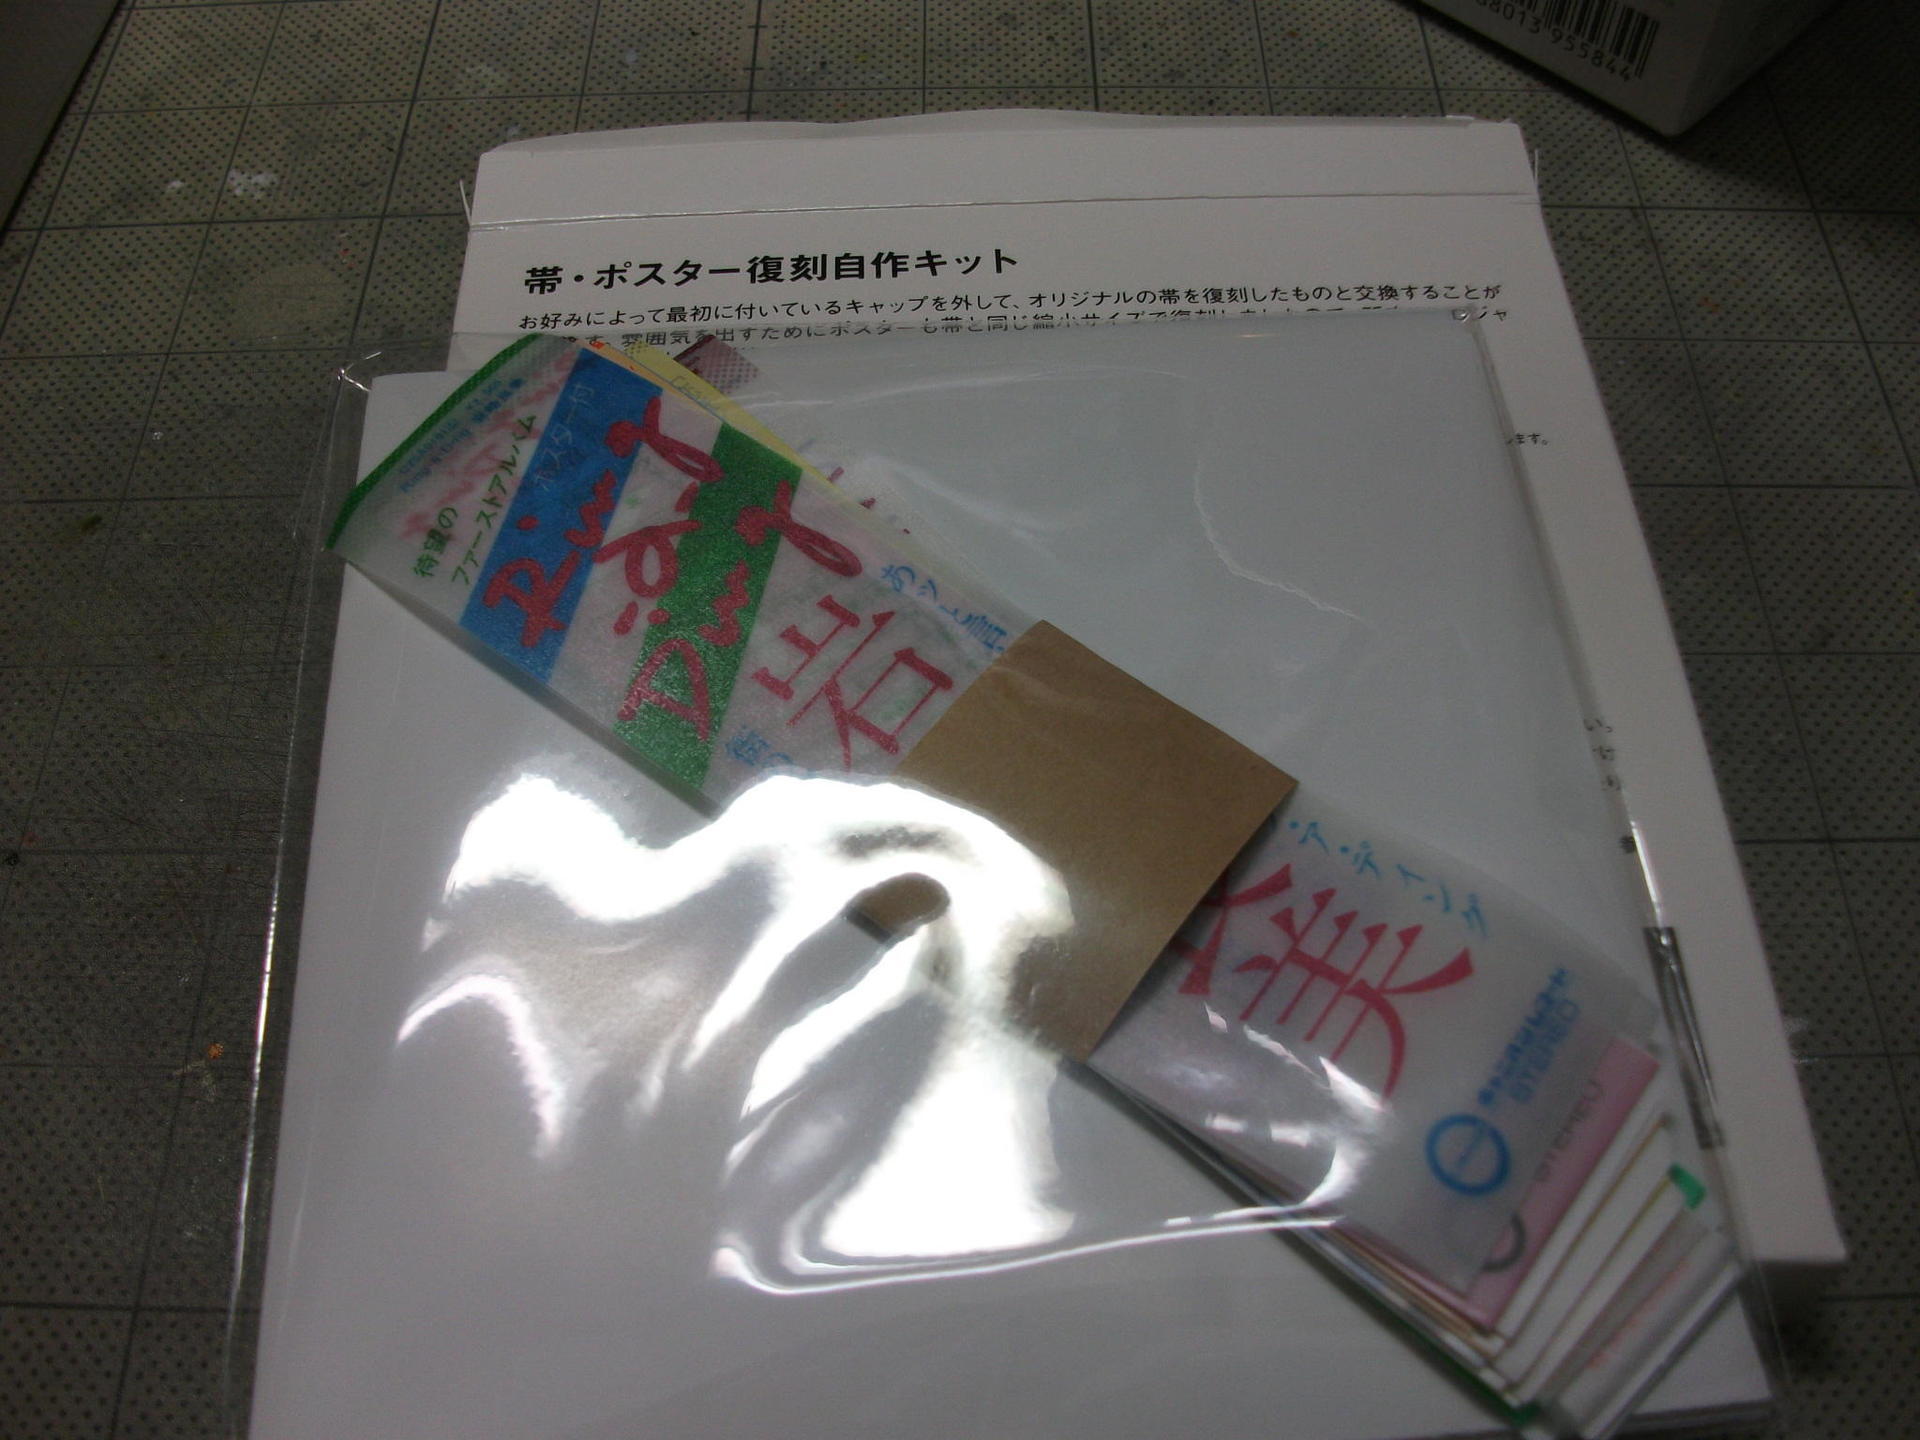 岩崎良美 debut 30th Anniversary CD-BOX-